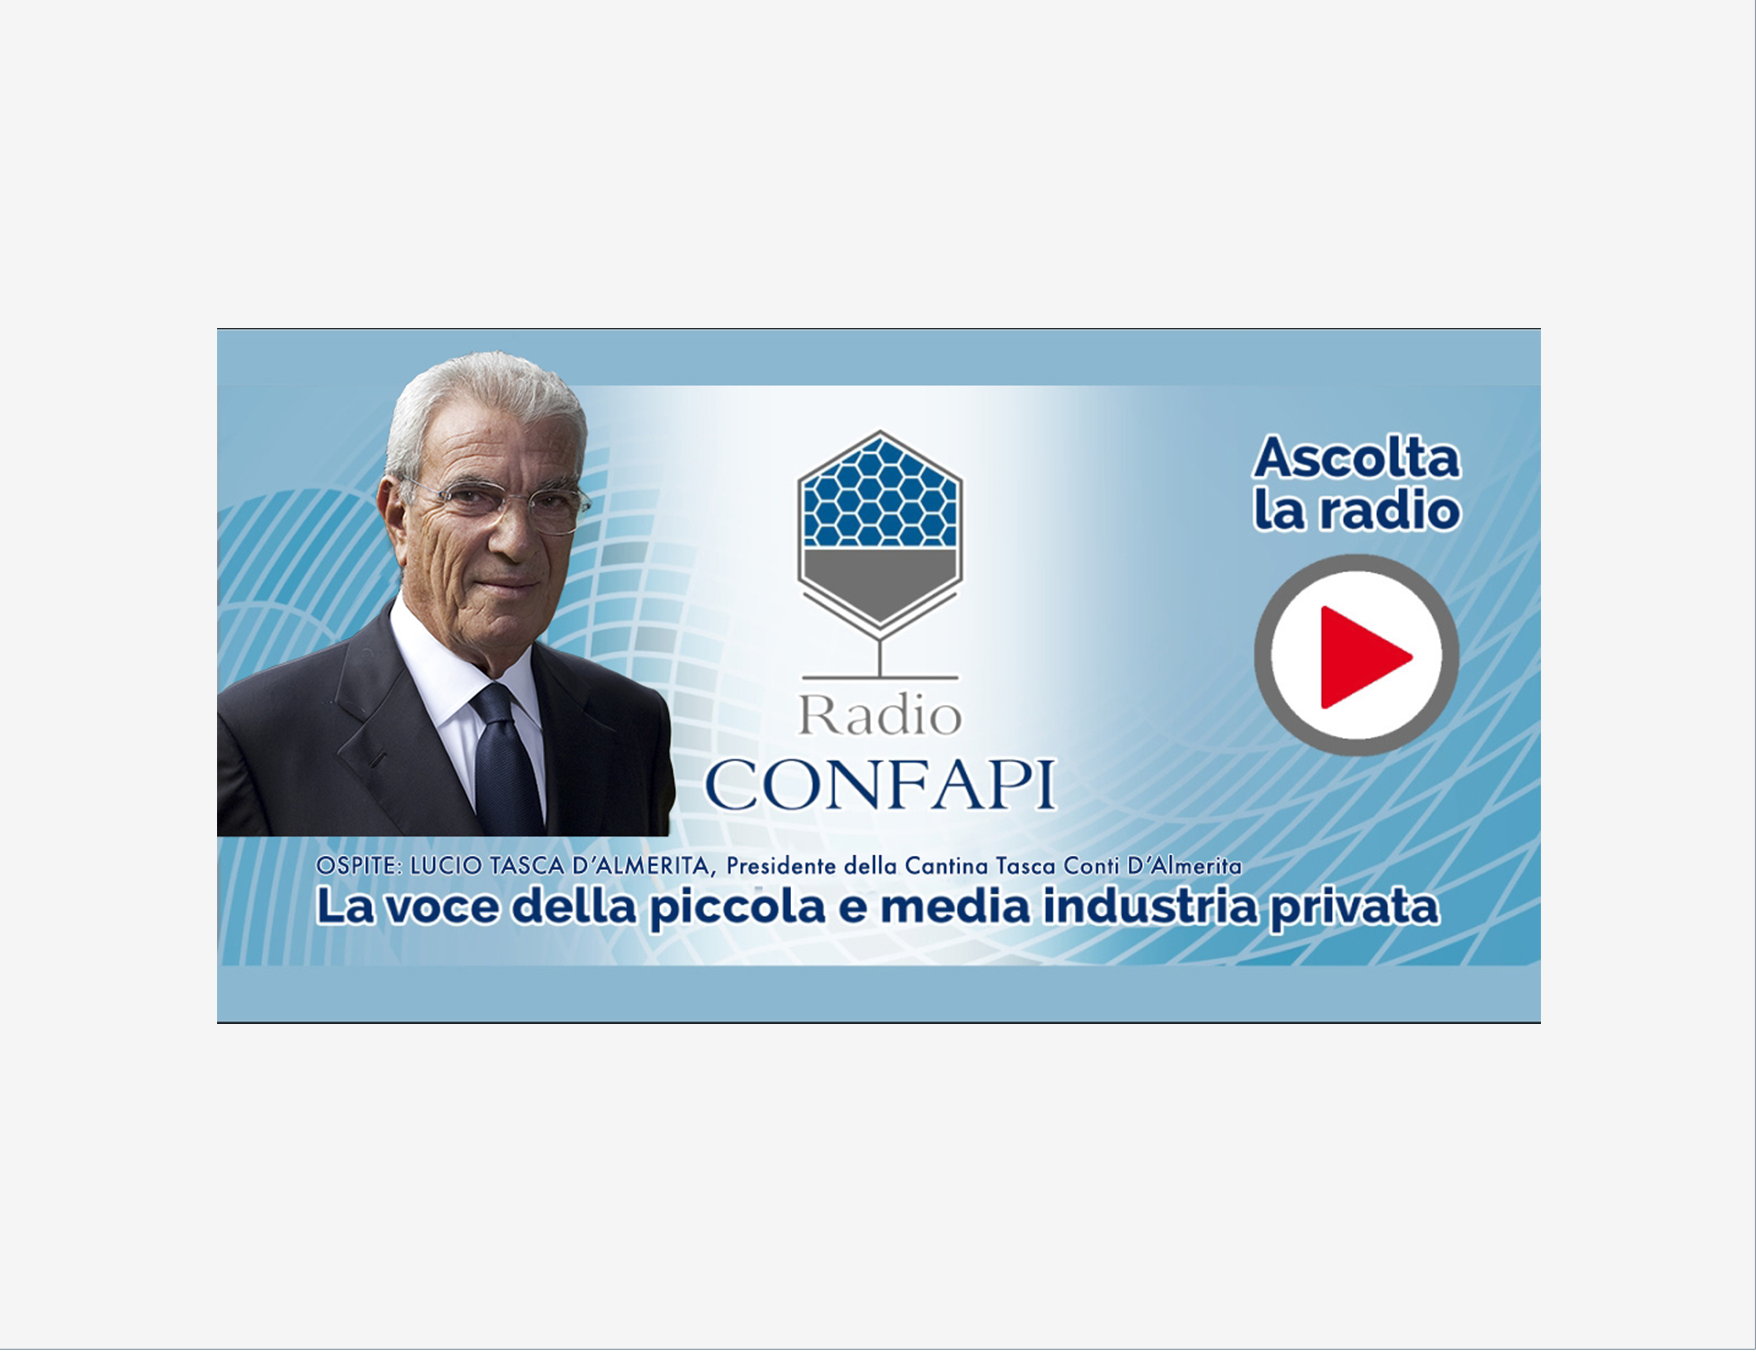 Al momento stai visualizzando 26 aprile ore 8.05, Lucio Tasca d’Almerita presidente della cantina Tasca Conti D’Almerita su Radio Confapi